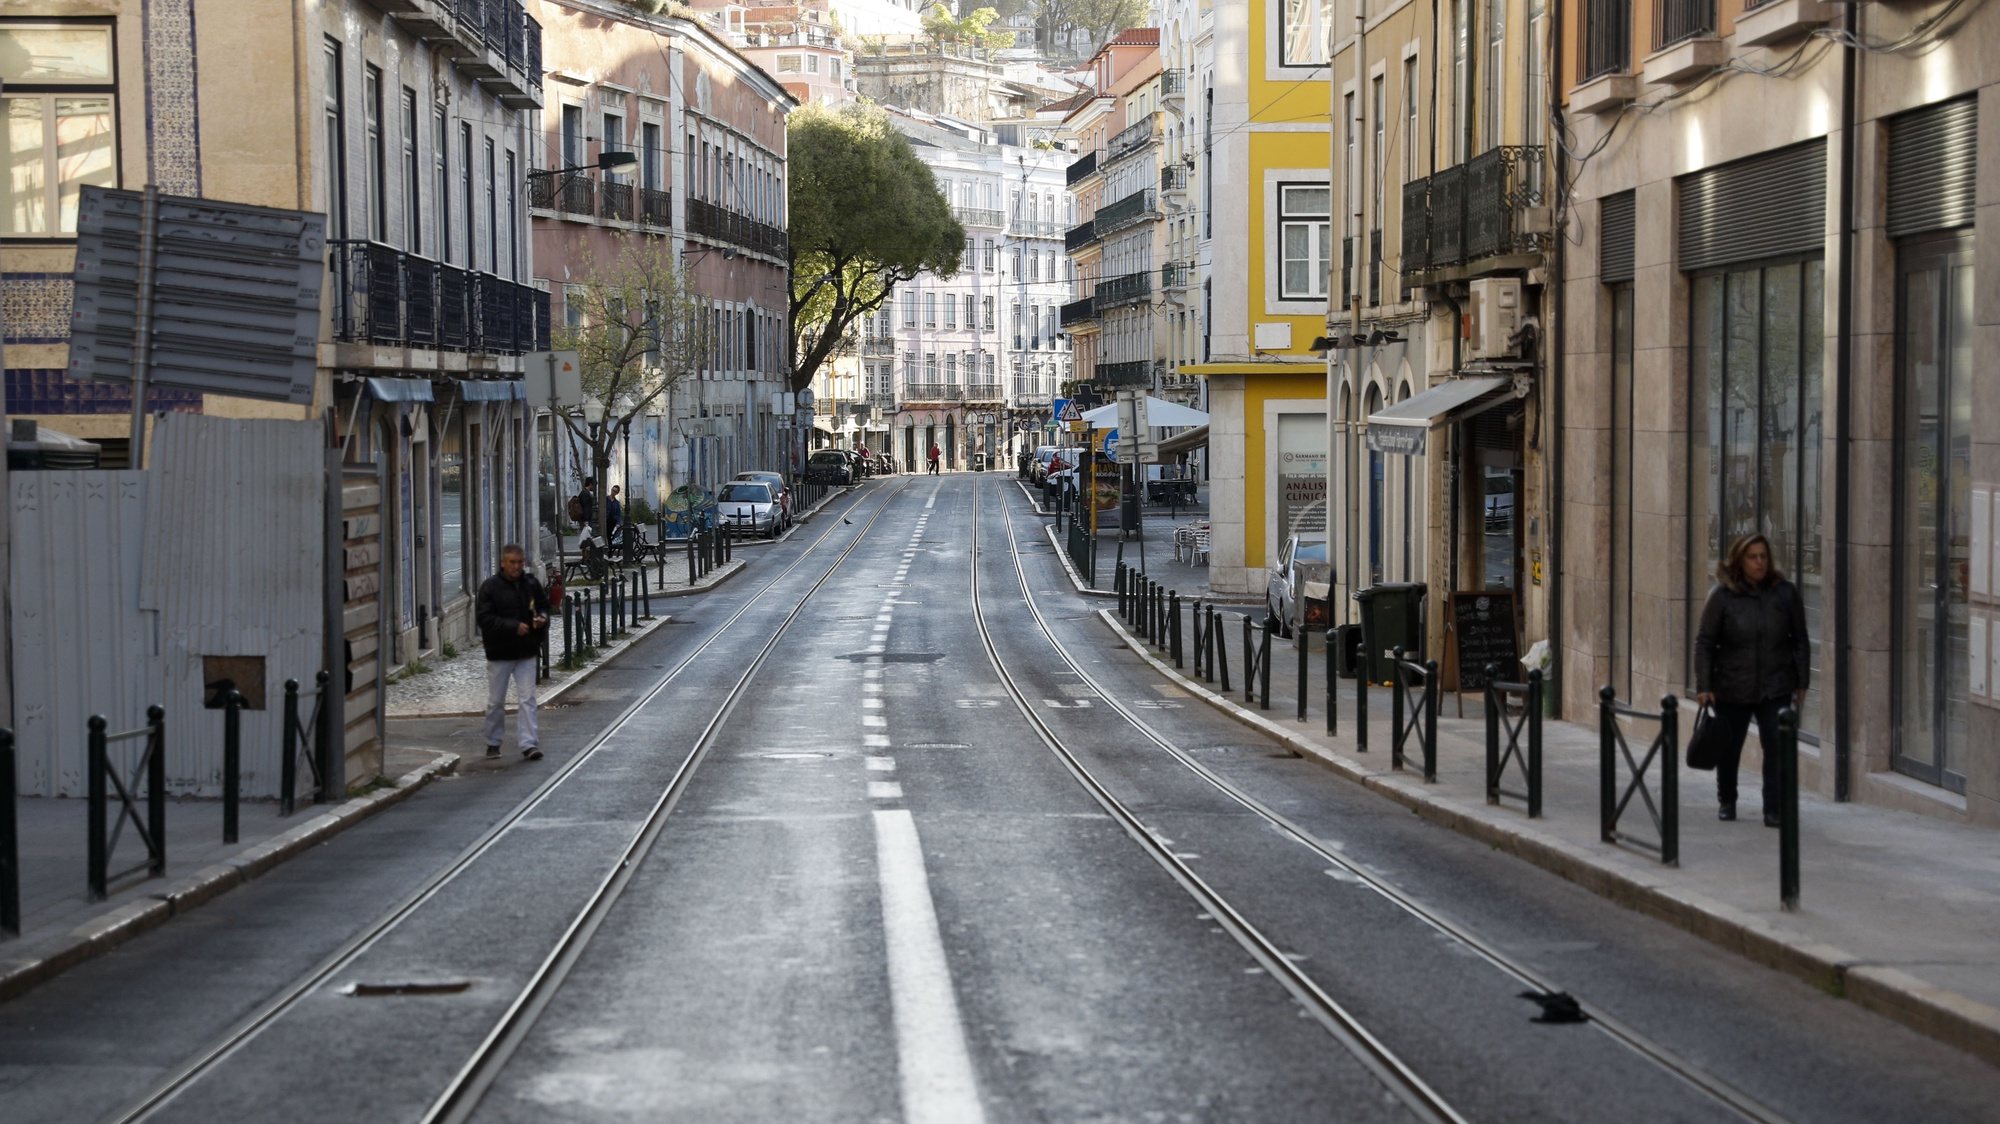 Ruas de Lisboa encontram-se quase desertas devido à pandemia do Covid-19, em Lisboa, 16 de março de 2020. Em Portugal, a Direção-Geral da Saúde (DGS) elevou no domingo o número de casos de infeção confirmados pelo Covid-19 para 245, mais 76 do que os registados no sábado. ANTÓNIO COTRIM/LUSA